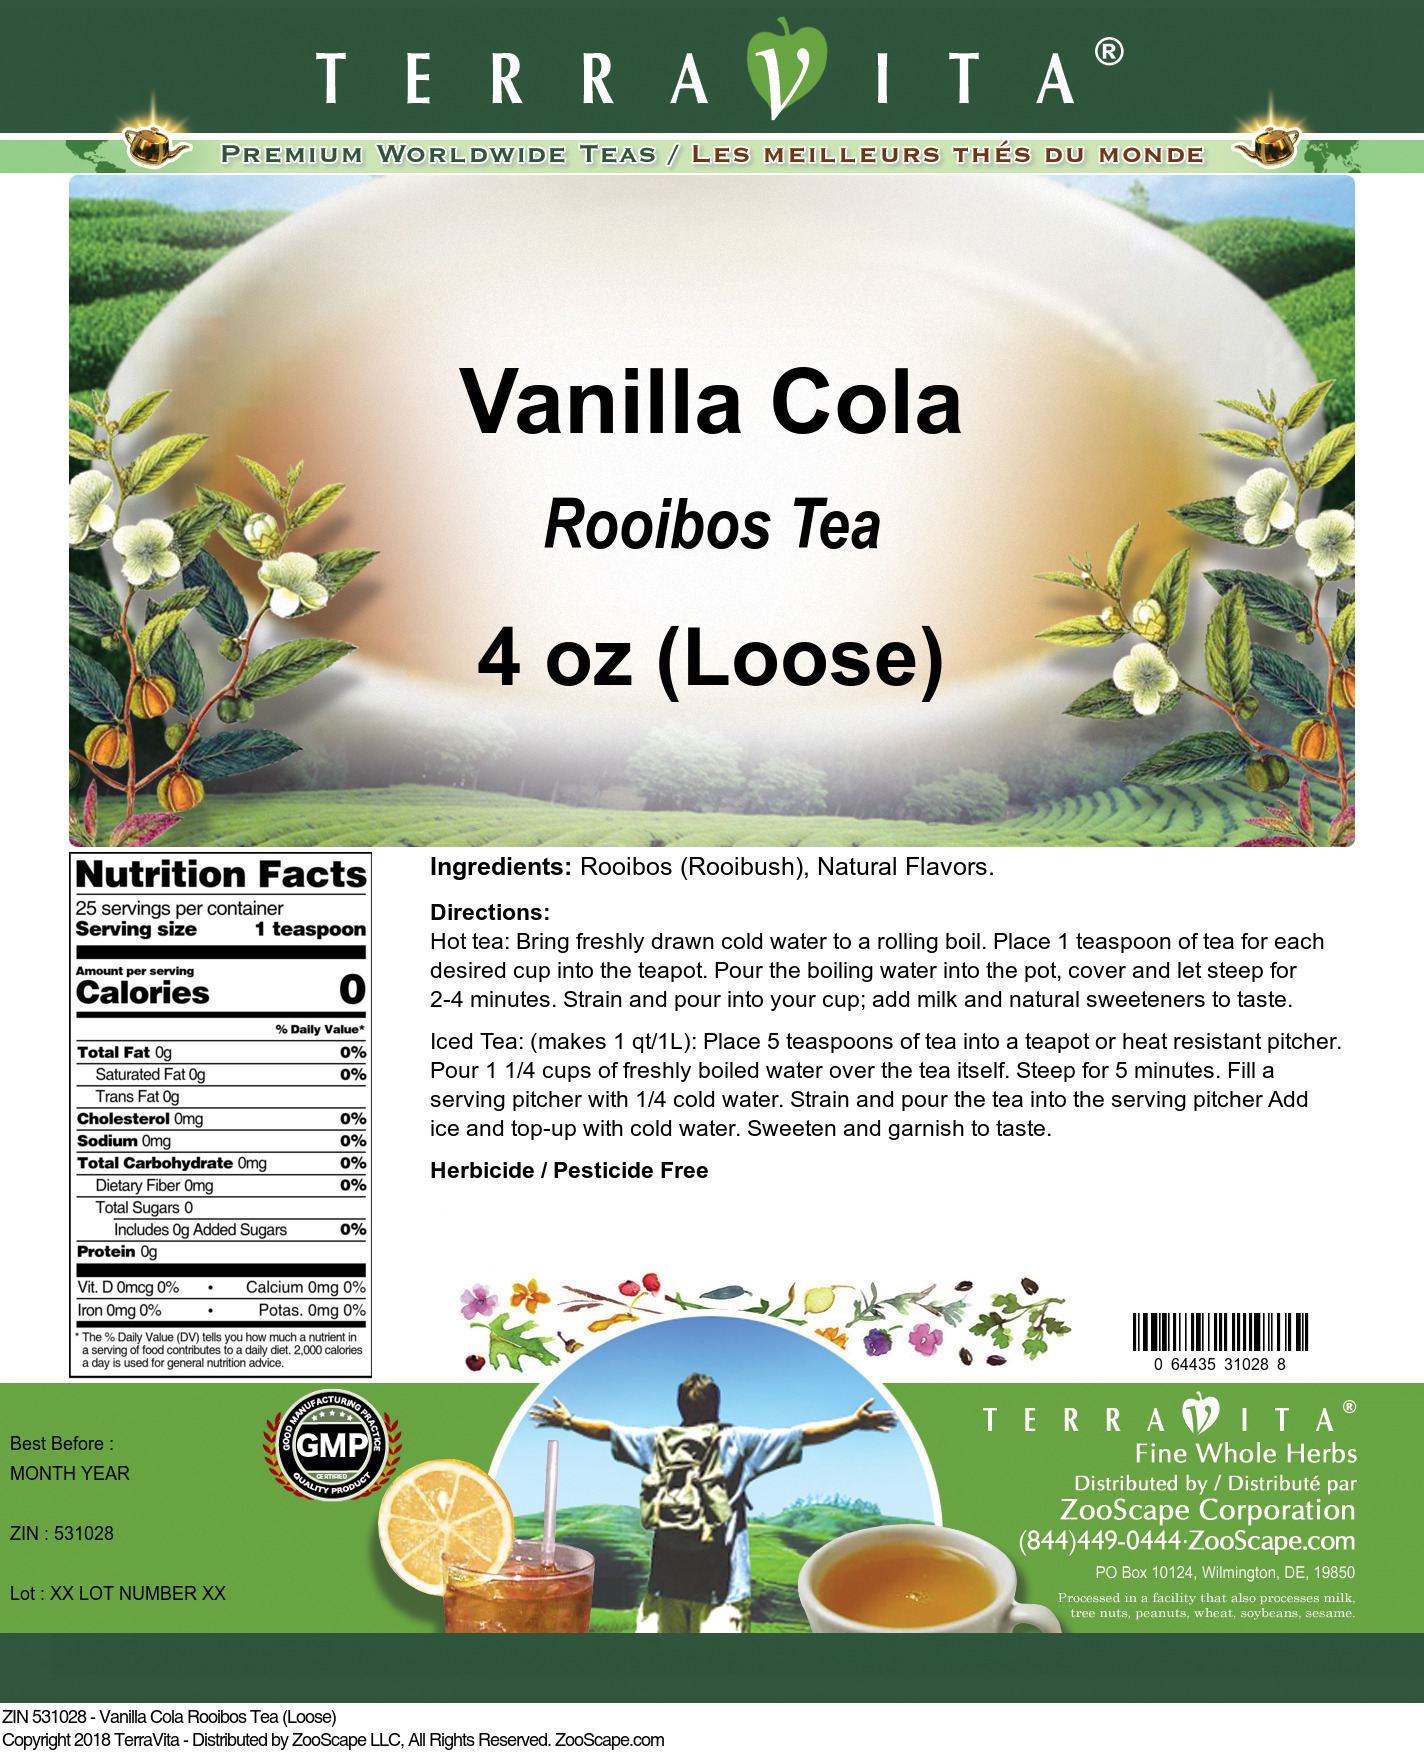 Vanilla Cola Rooibos Tea (Loose) - Label